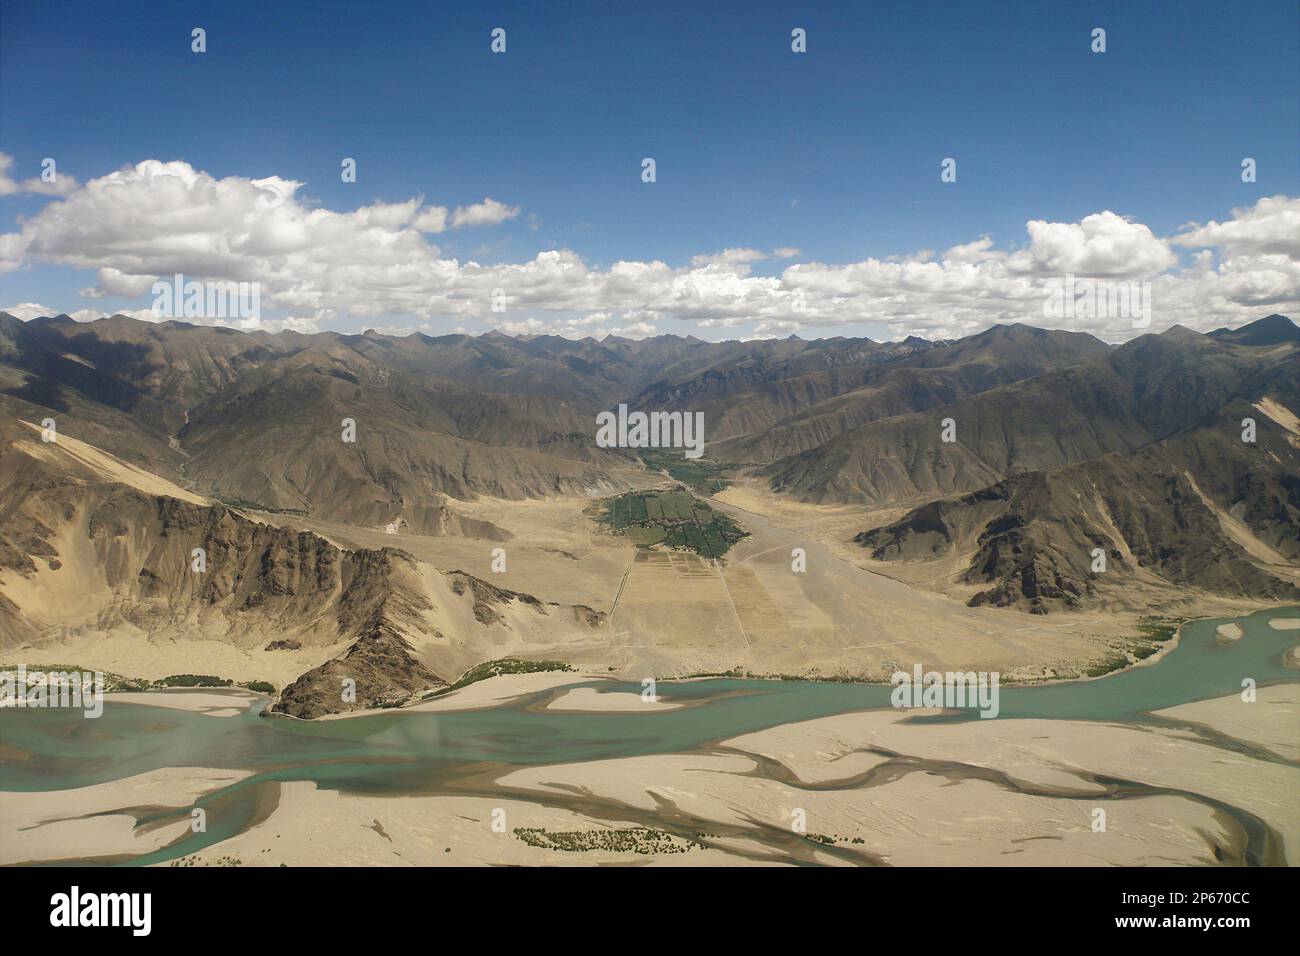 Aerial view, Tibet, China Stock Photo